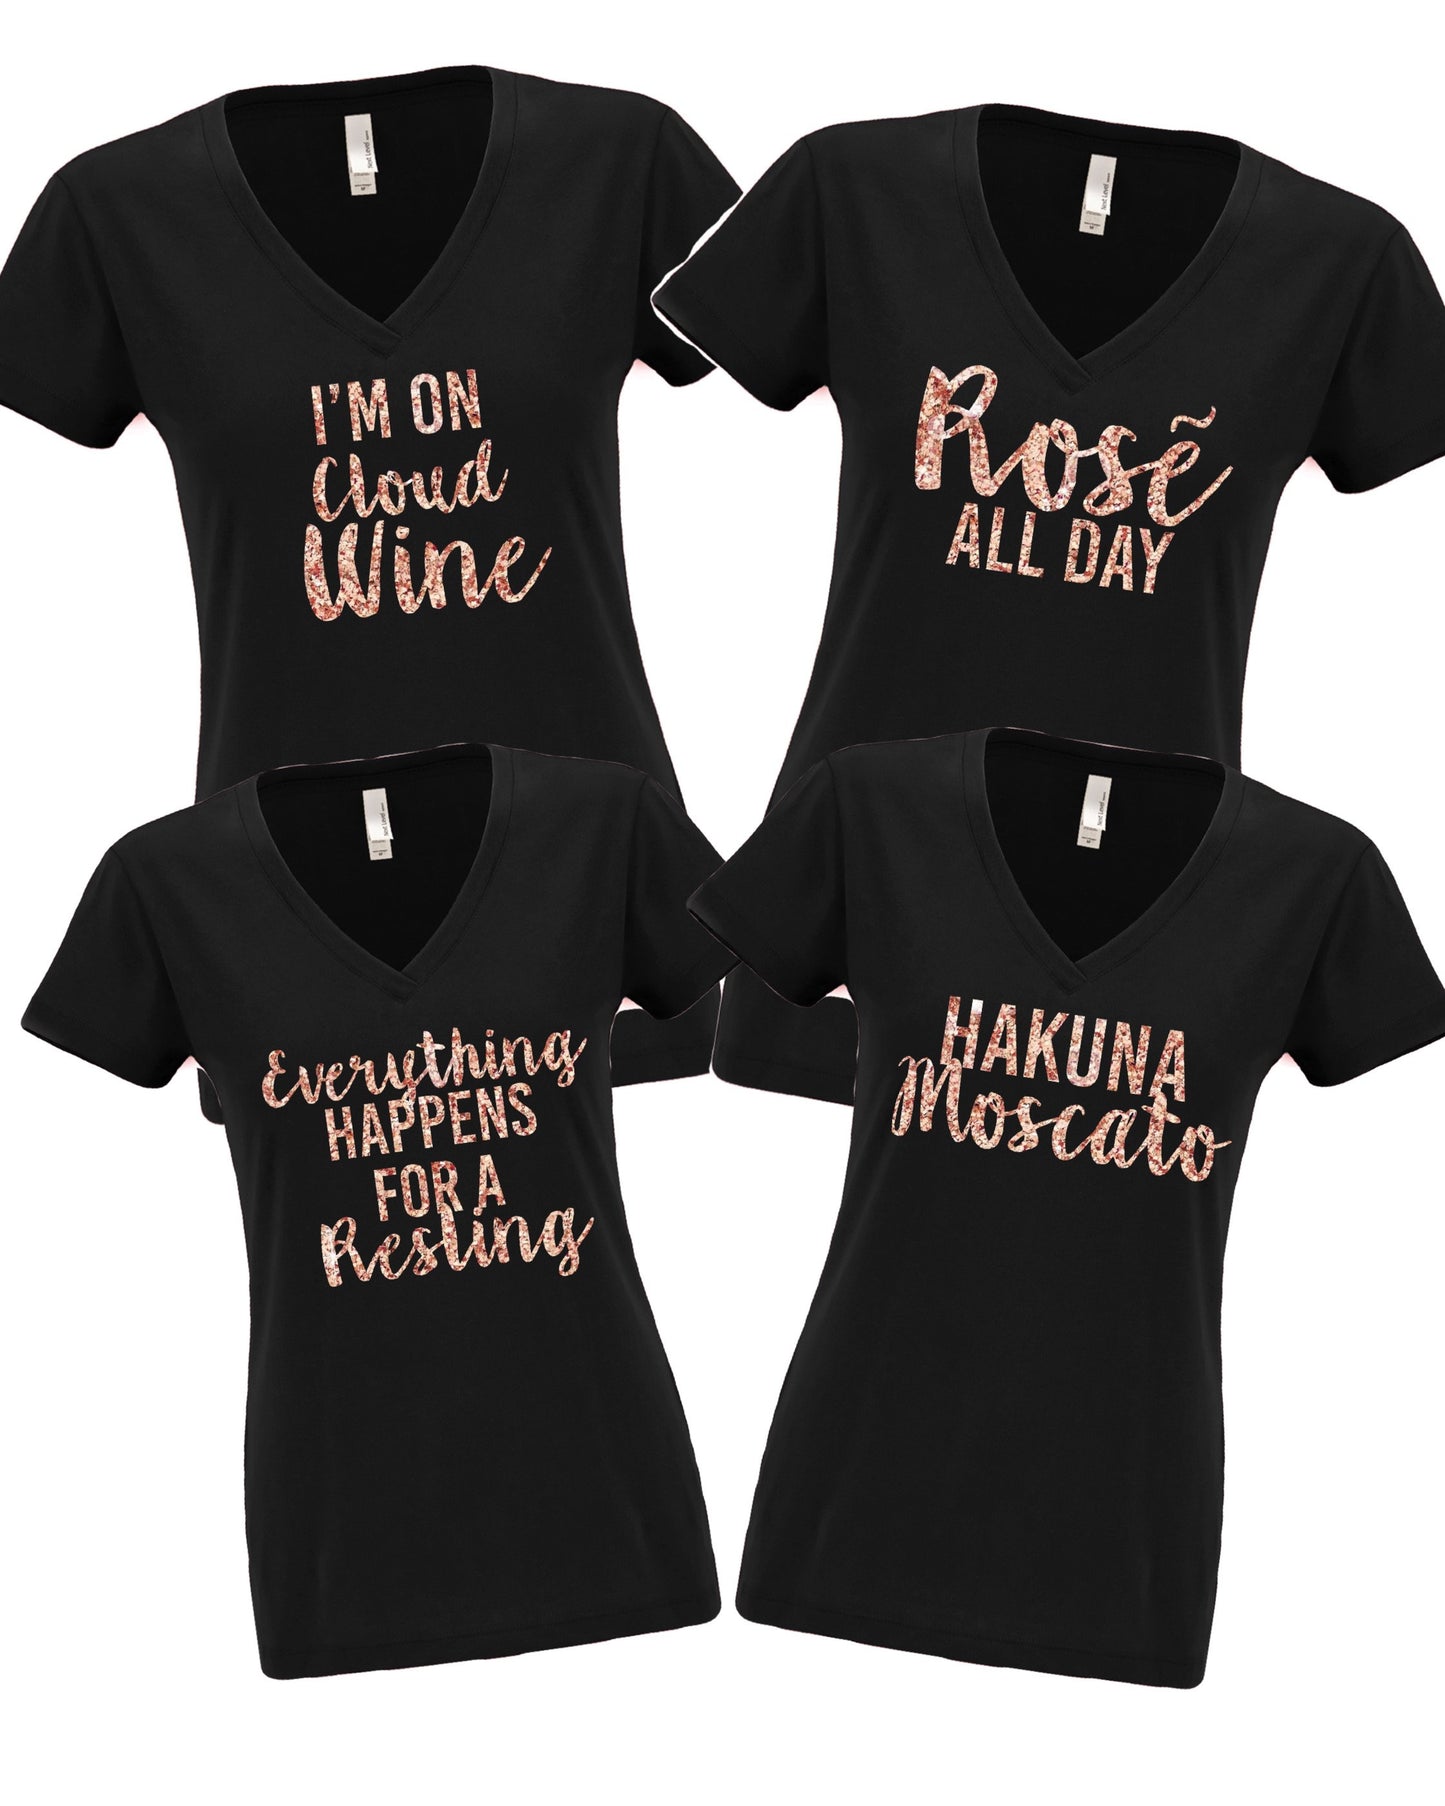 Rose all day shirt, Rose drinker shirt, gift for wine lover, rose wine lover, gift for her, bridesmaid shirts, bridesmaid gift, wine tasting